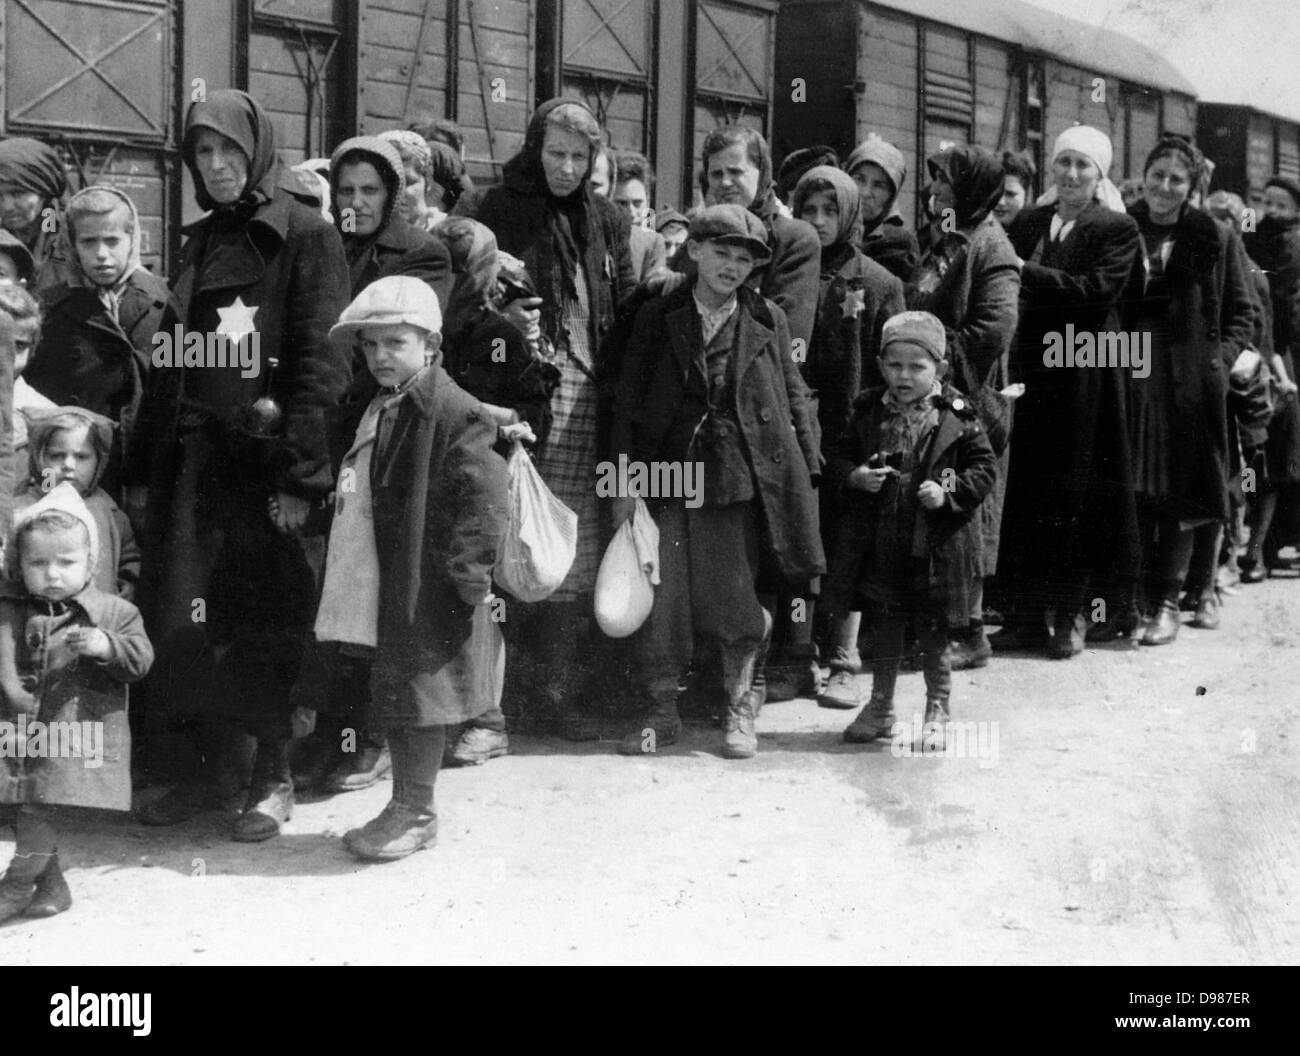 Arrivo di un treno contenente gli Ebrei deportati di accampamento di morte di Auschwitz in Polonia. Auschwitz-Birkenau (1940-1945) è stato il più grande del tedesco di campi di concentramento e di sterminio. 1.1 milioni di persone, il 90 per cento di loro ebrei che si ritiene abbiano vi morì la maggior parte di loro nelle camere a gas. Foto Stock